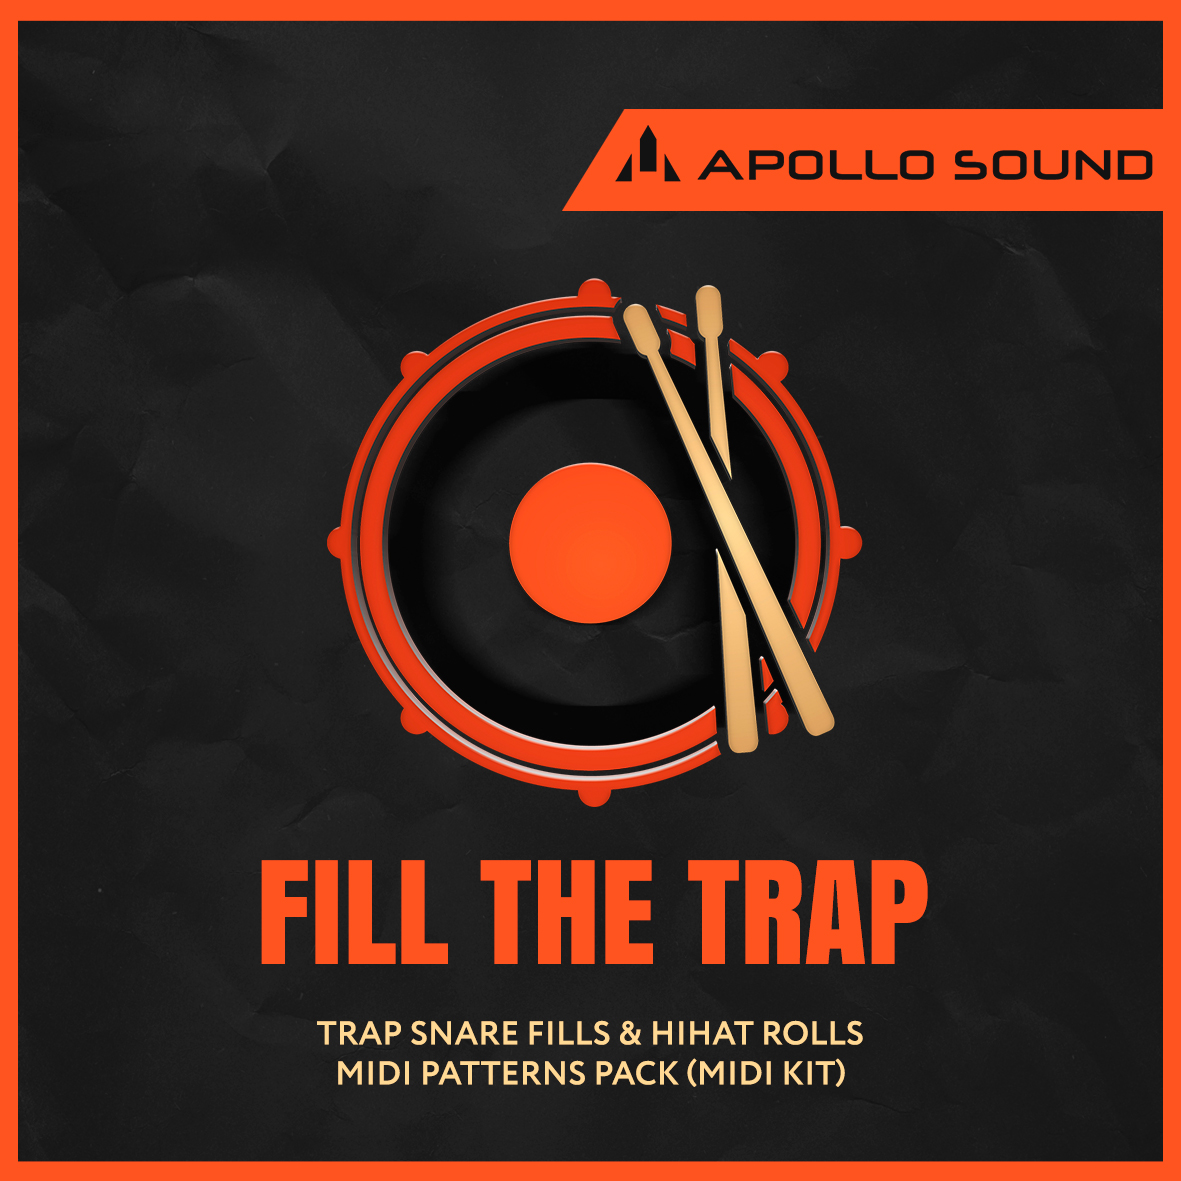 دانلود مجموعه پاساژ درام ترپ / Apollo Sound Fill The Trap